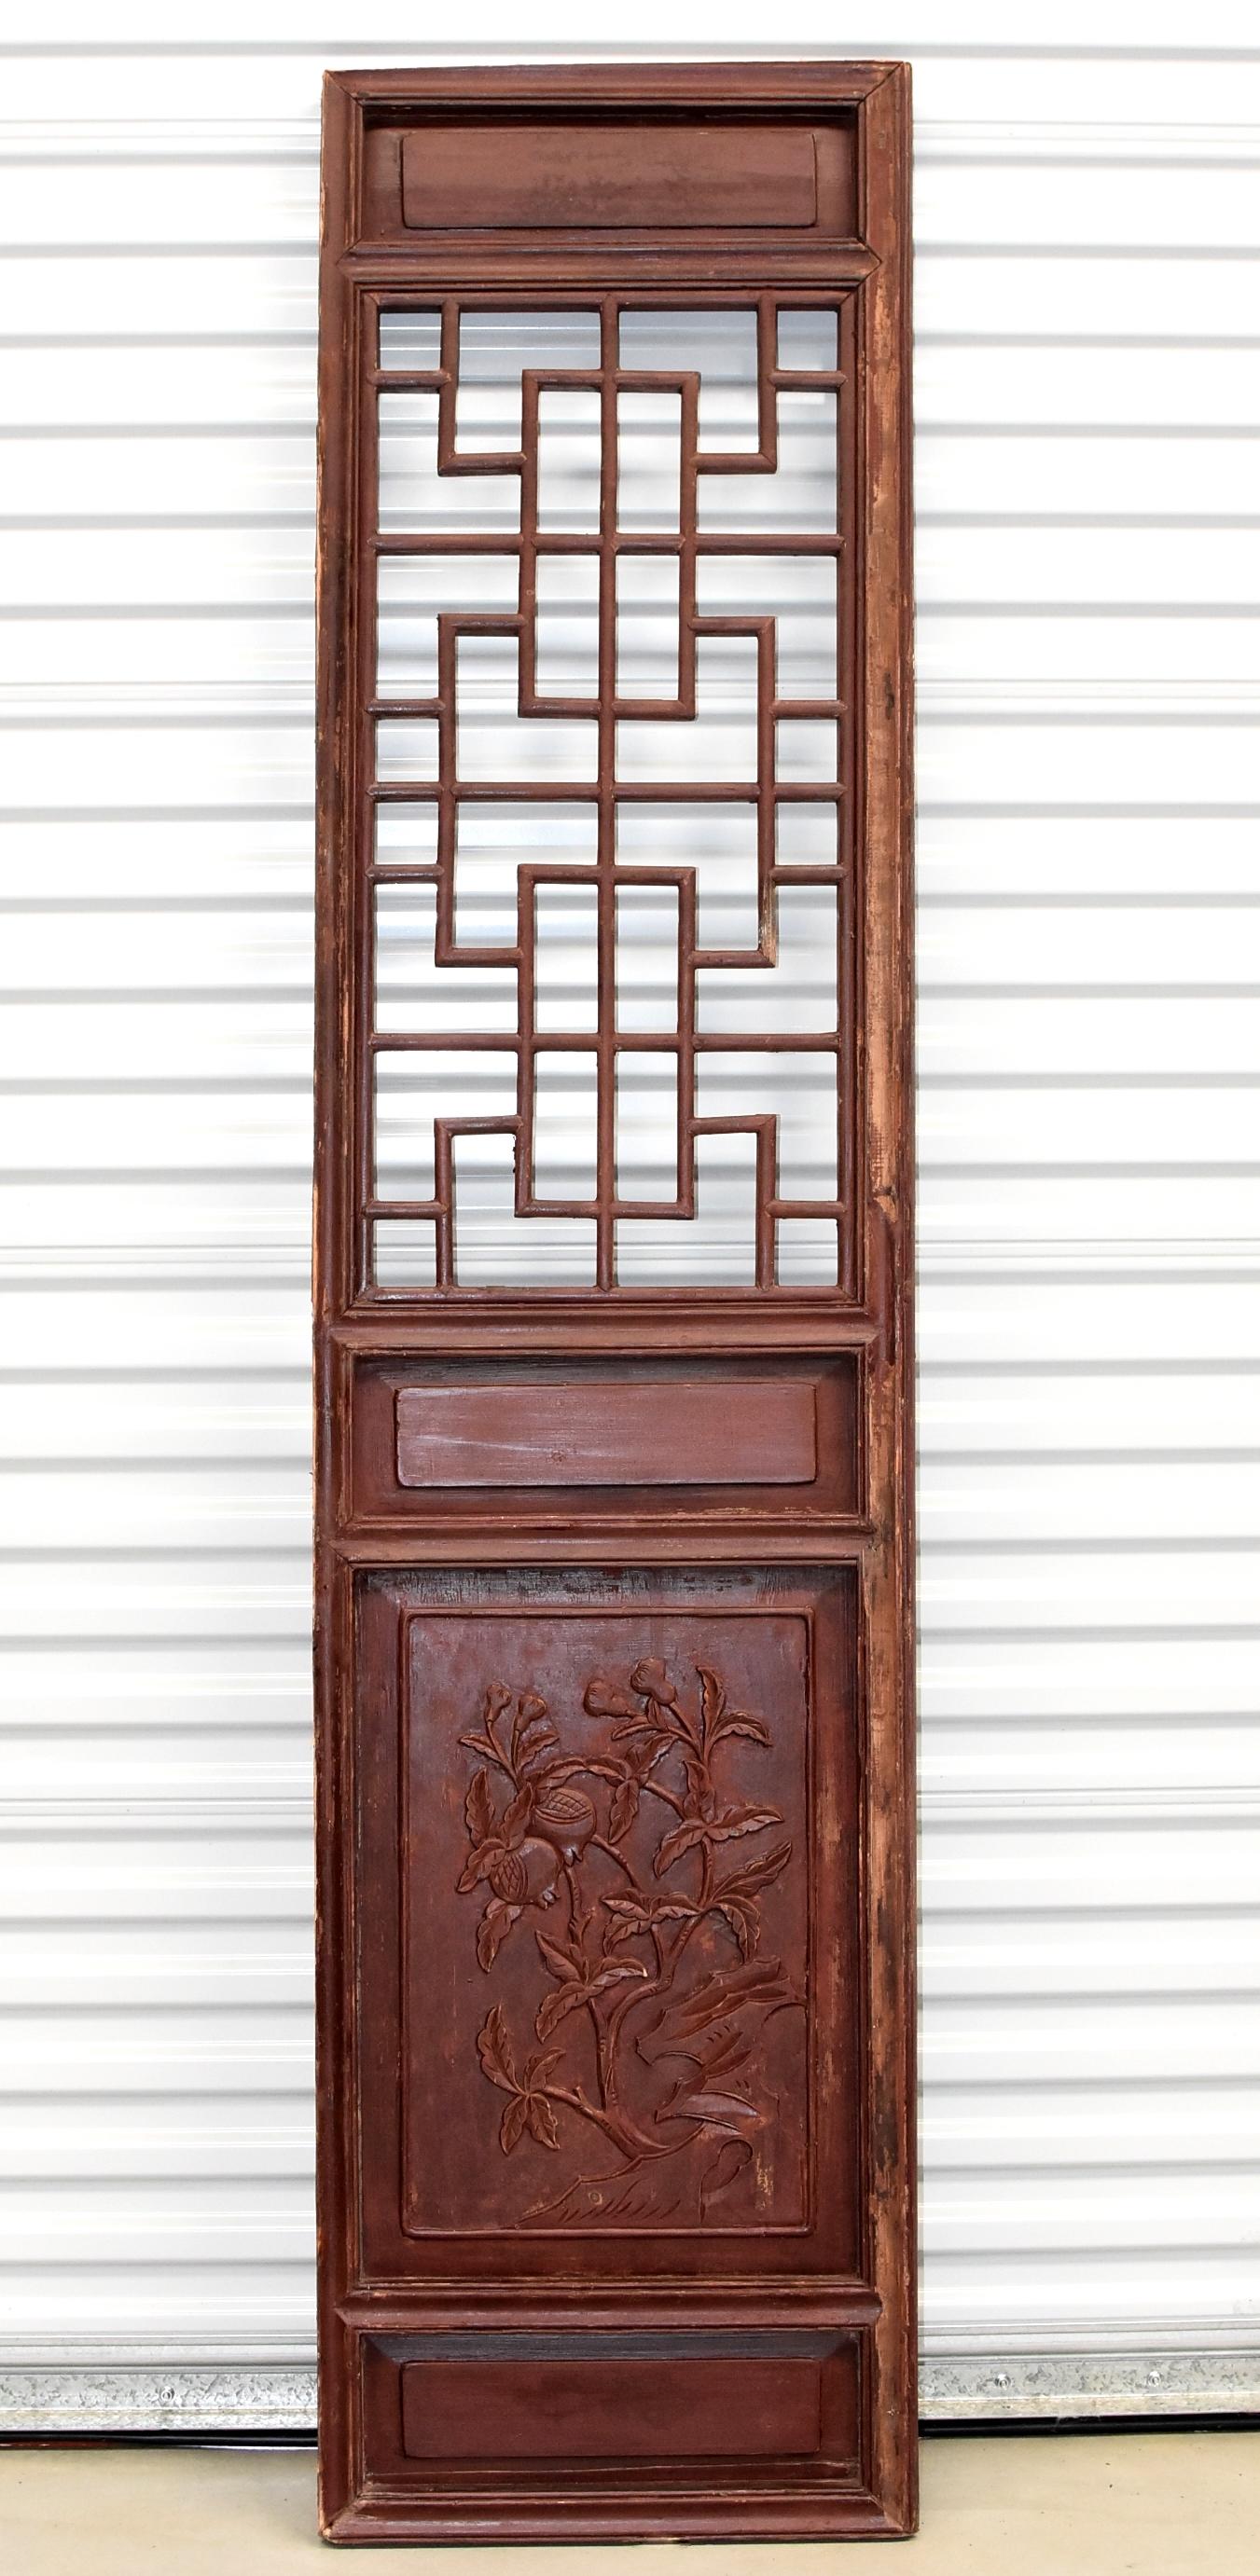 Dies ist ein Paar schöne, frühe 20. Jahrhundert chinesischen antiken Tür Bildschirme. Der obere Teil besteht aus einem chinesischen Langlebigkeitsmuster, das durch das Zusammenfügen von maßgefertigten Holzstücken mit Hilfe von Zapfen und